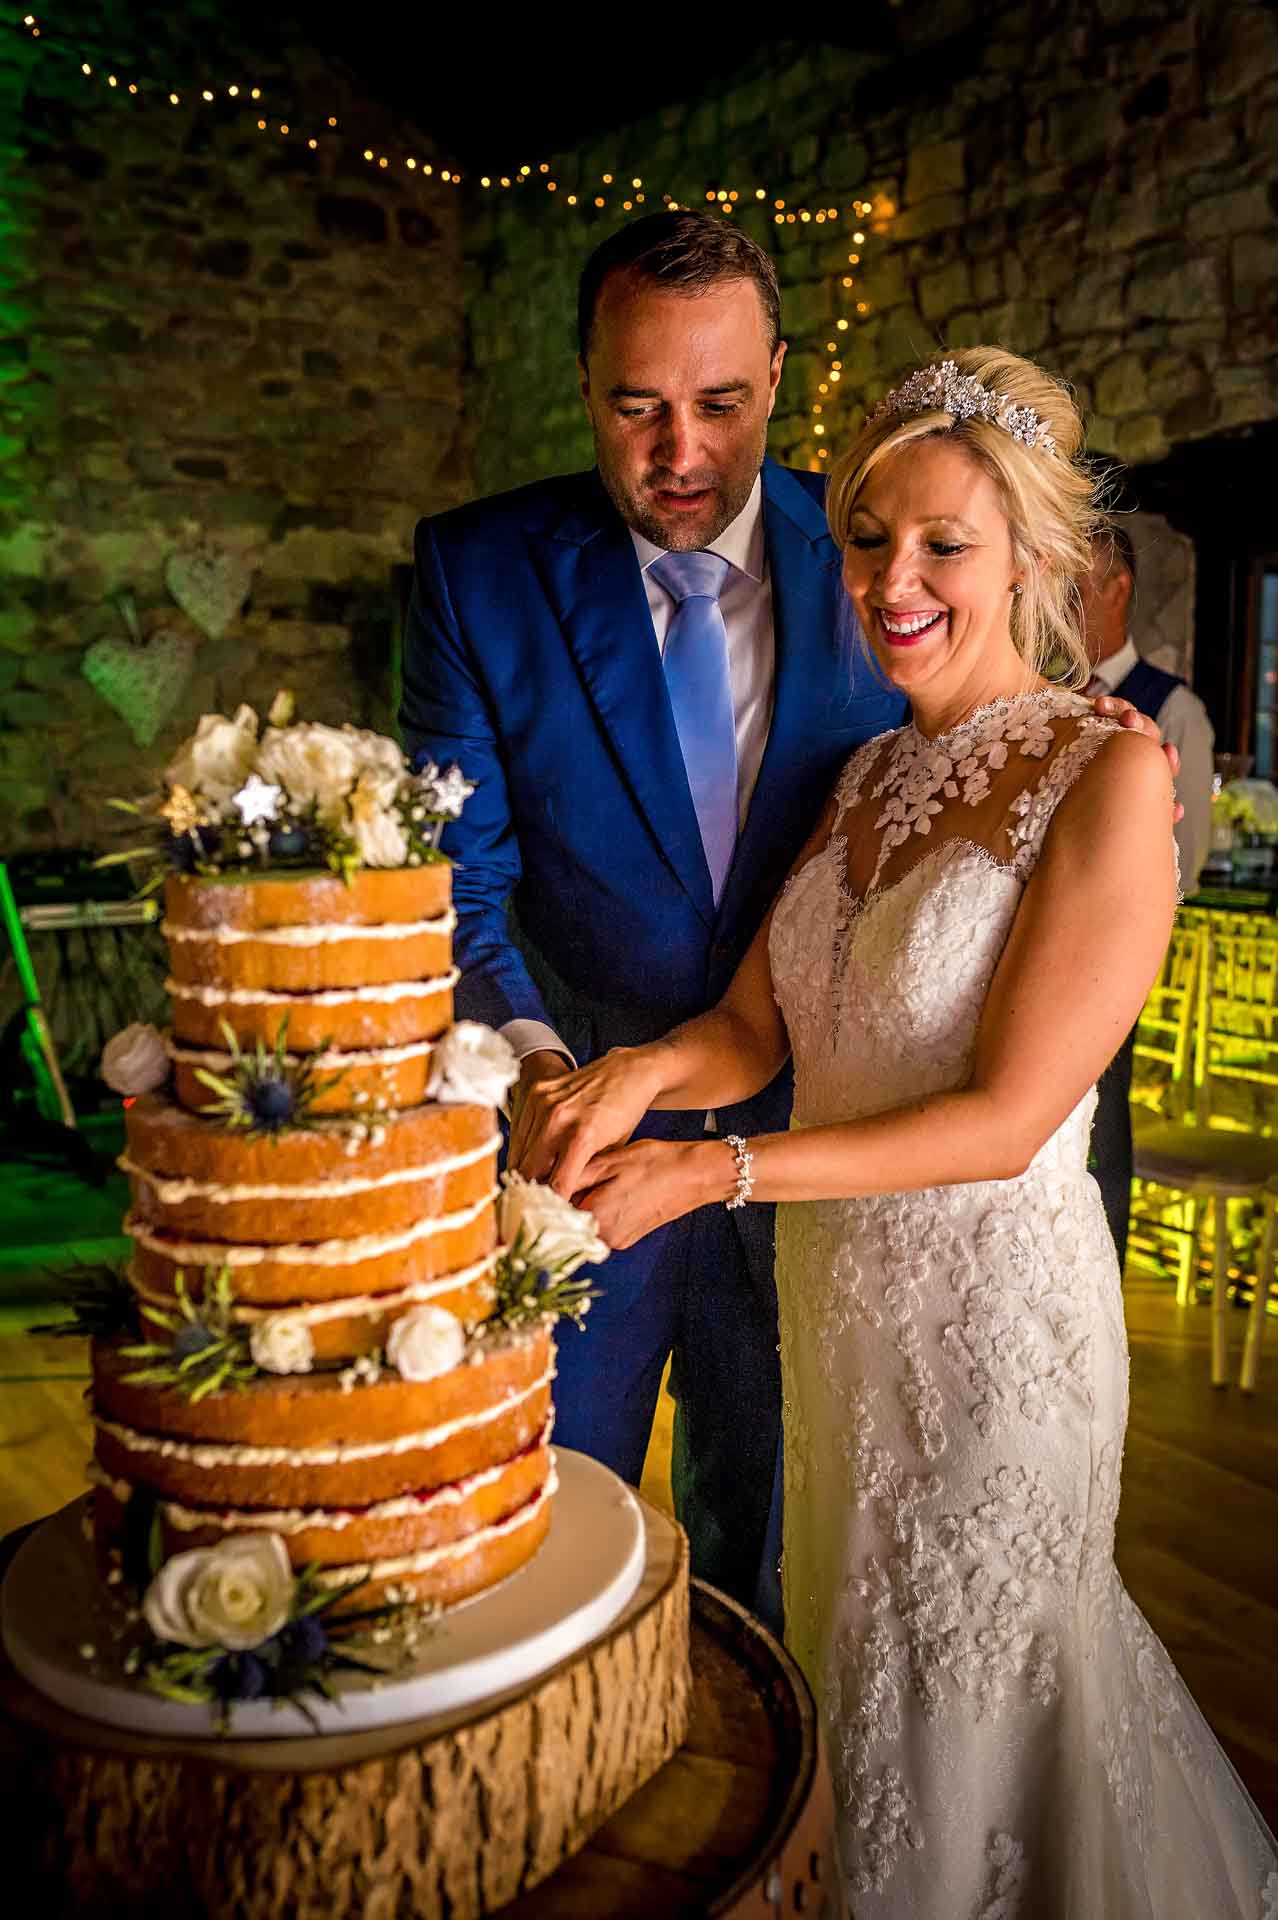 Wedding Cake Cutting at Cardiff Wedding